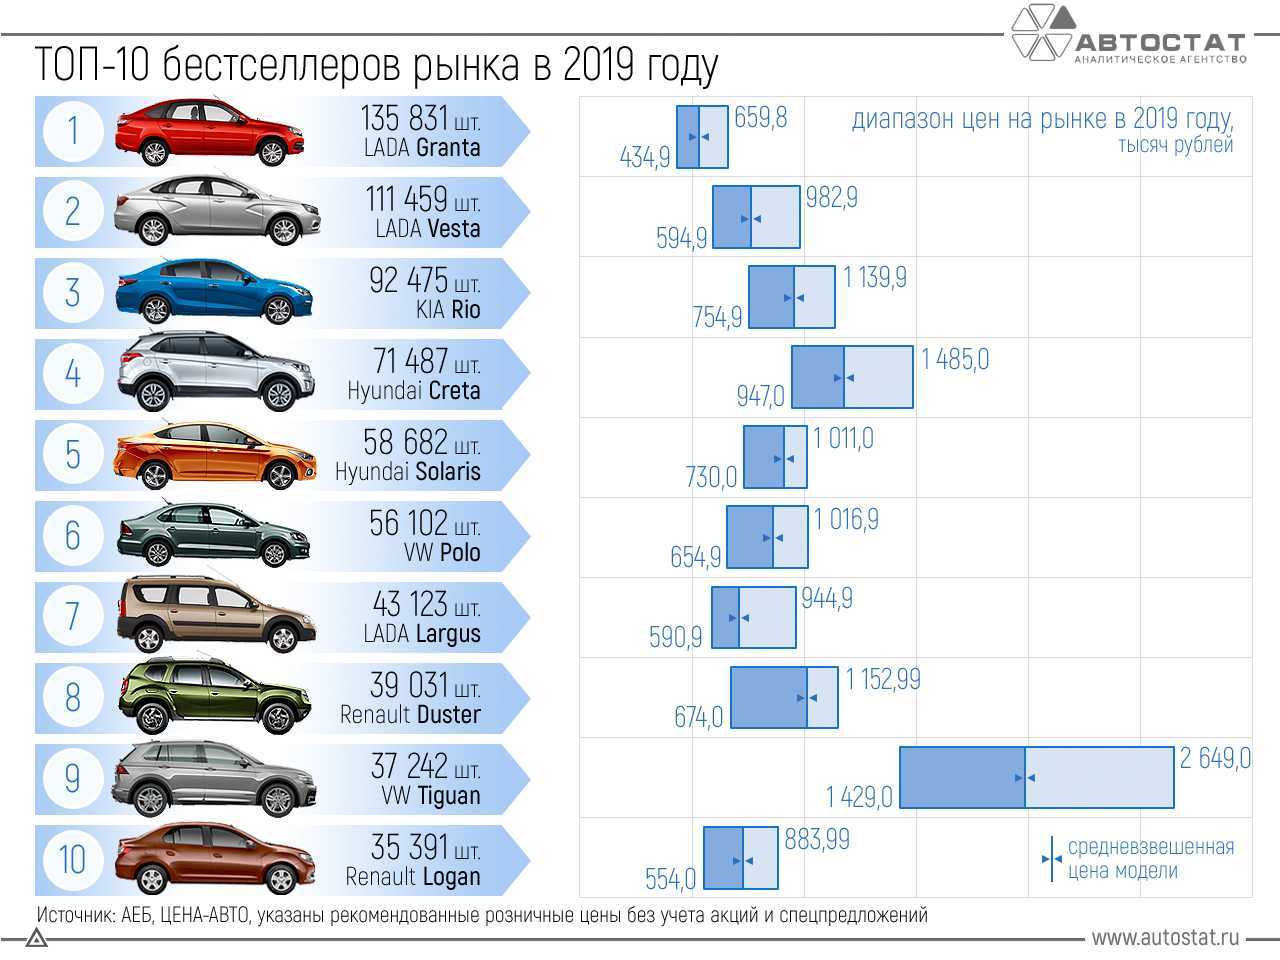 Bmw и audi нашли замену: 8 дорогих автомобилей, которые придут в россию